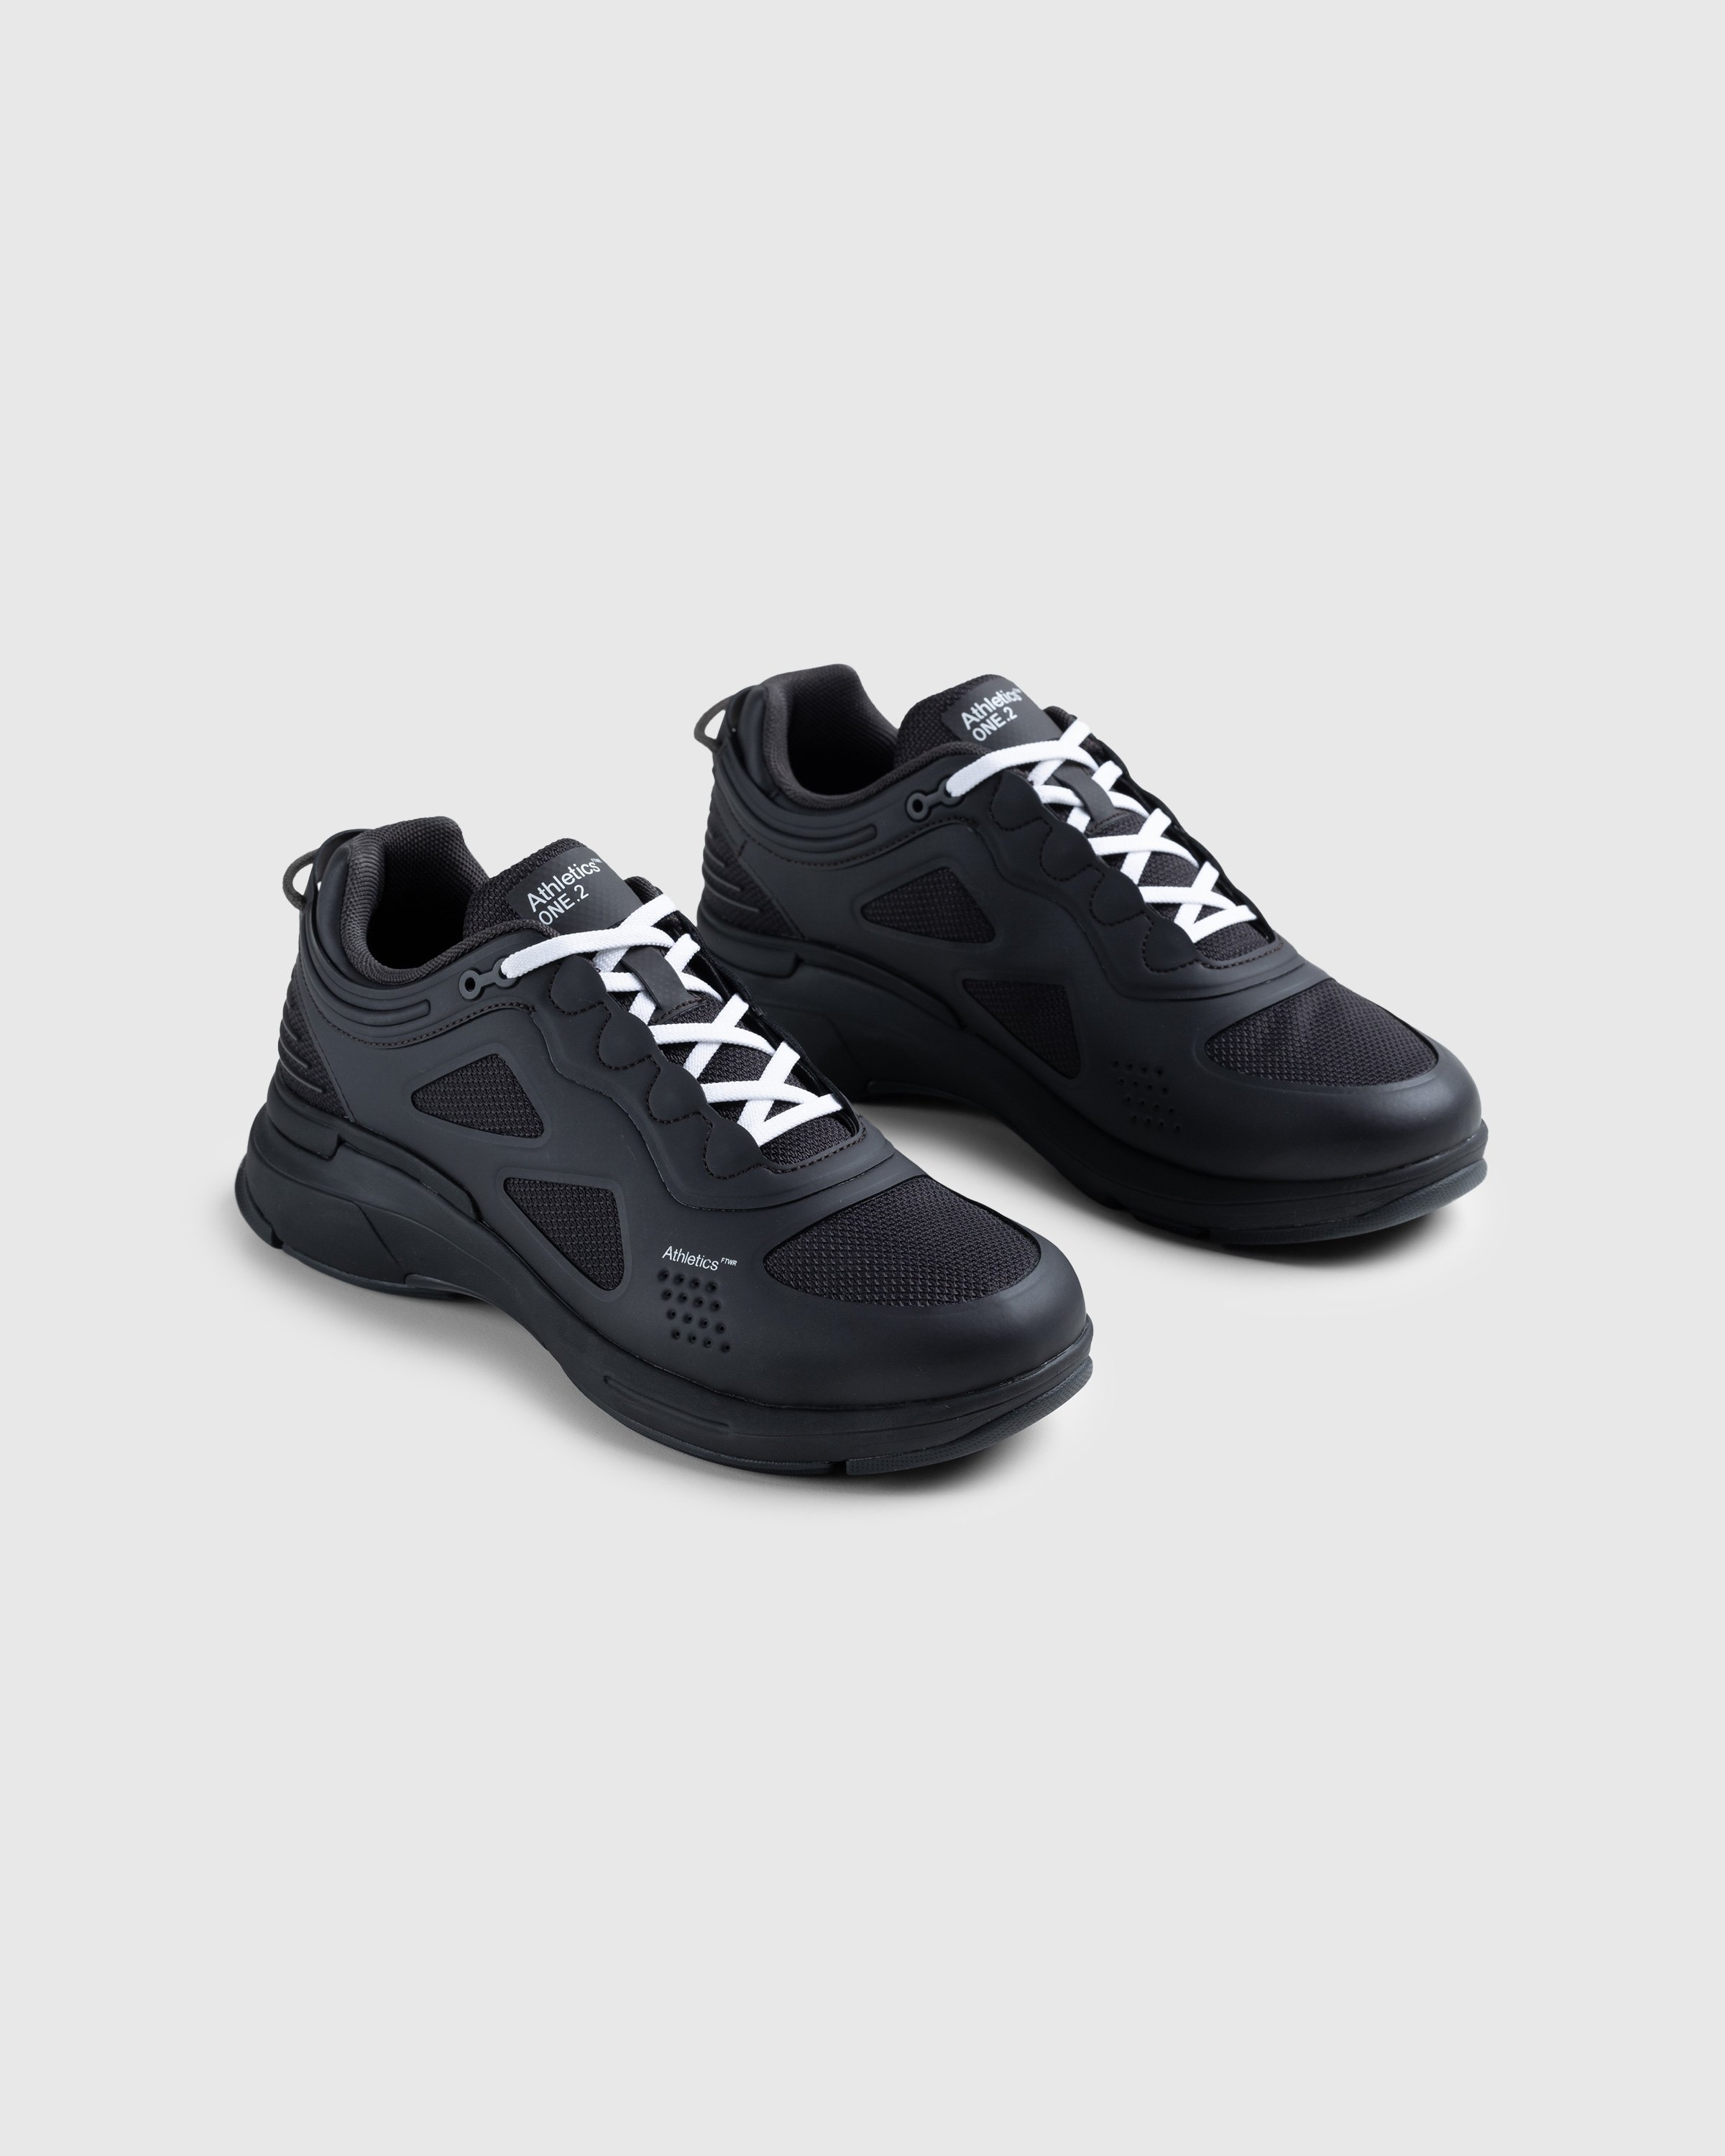 Athletics Footwear - One.2 Black - Footwear - Black - Image 3